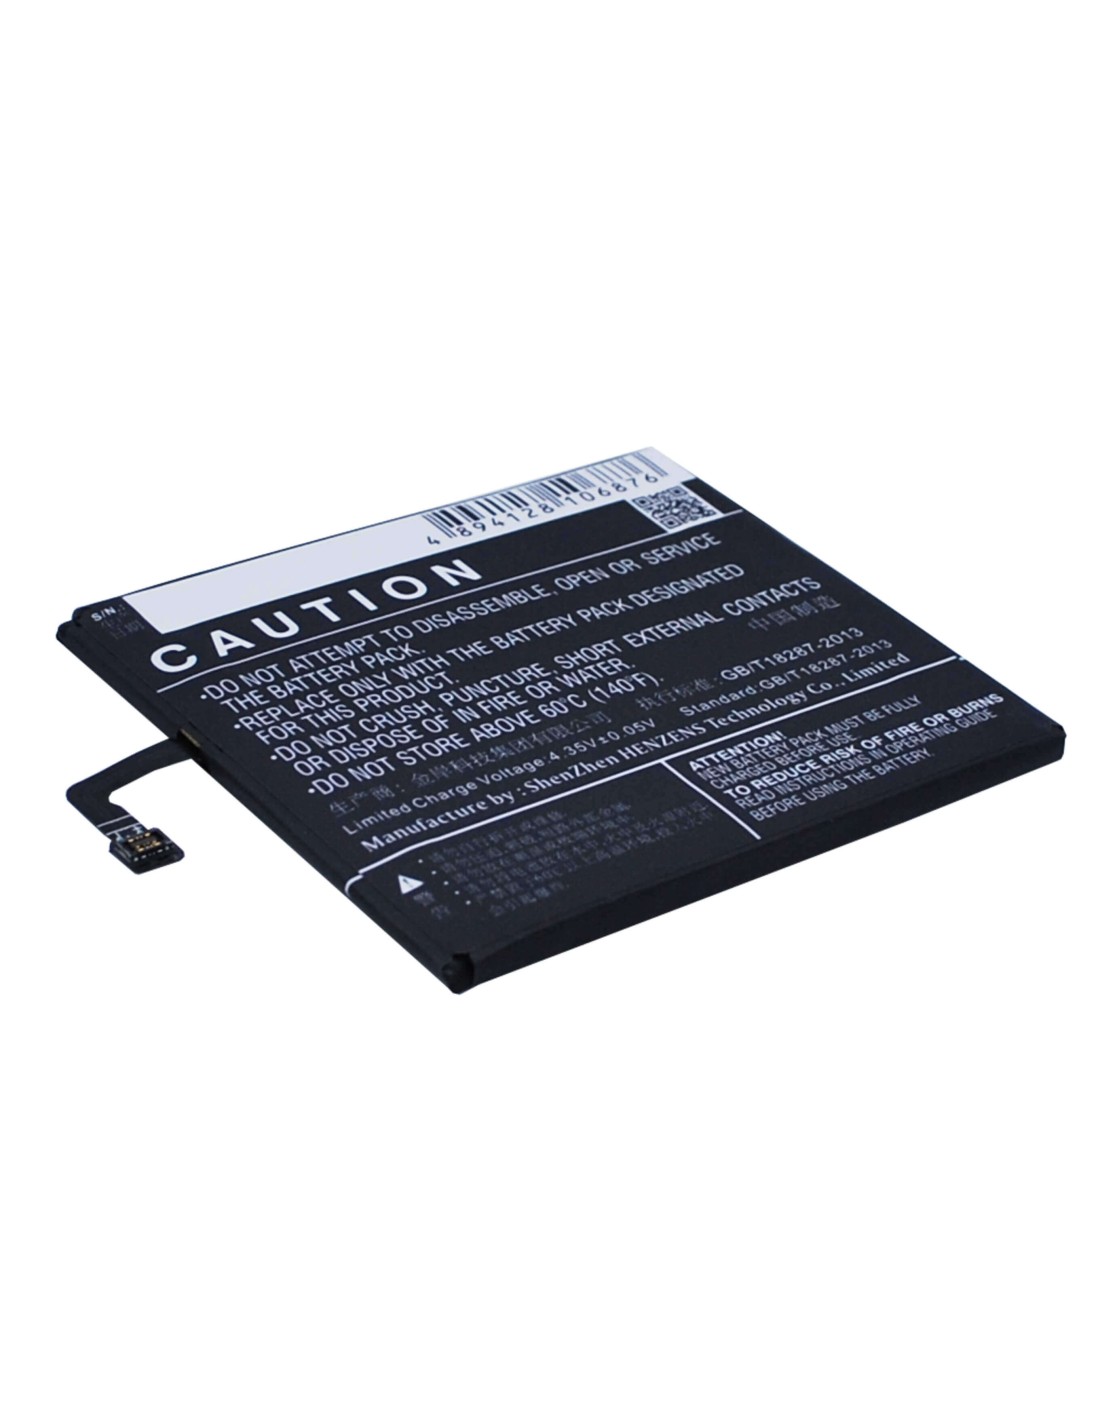 Battery for Lenovo S60, S60-t, S60-w 3.8V, 2150mAh - 8.17Wh